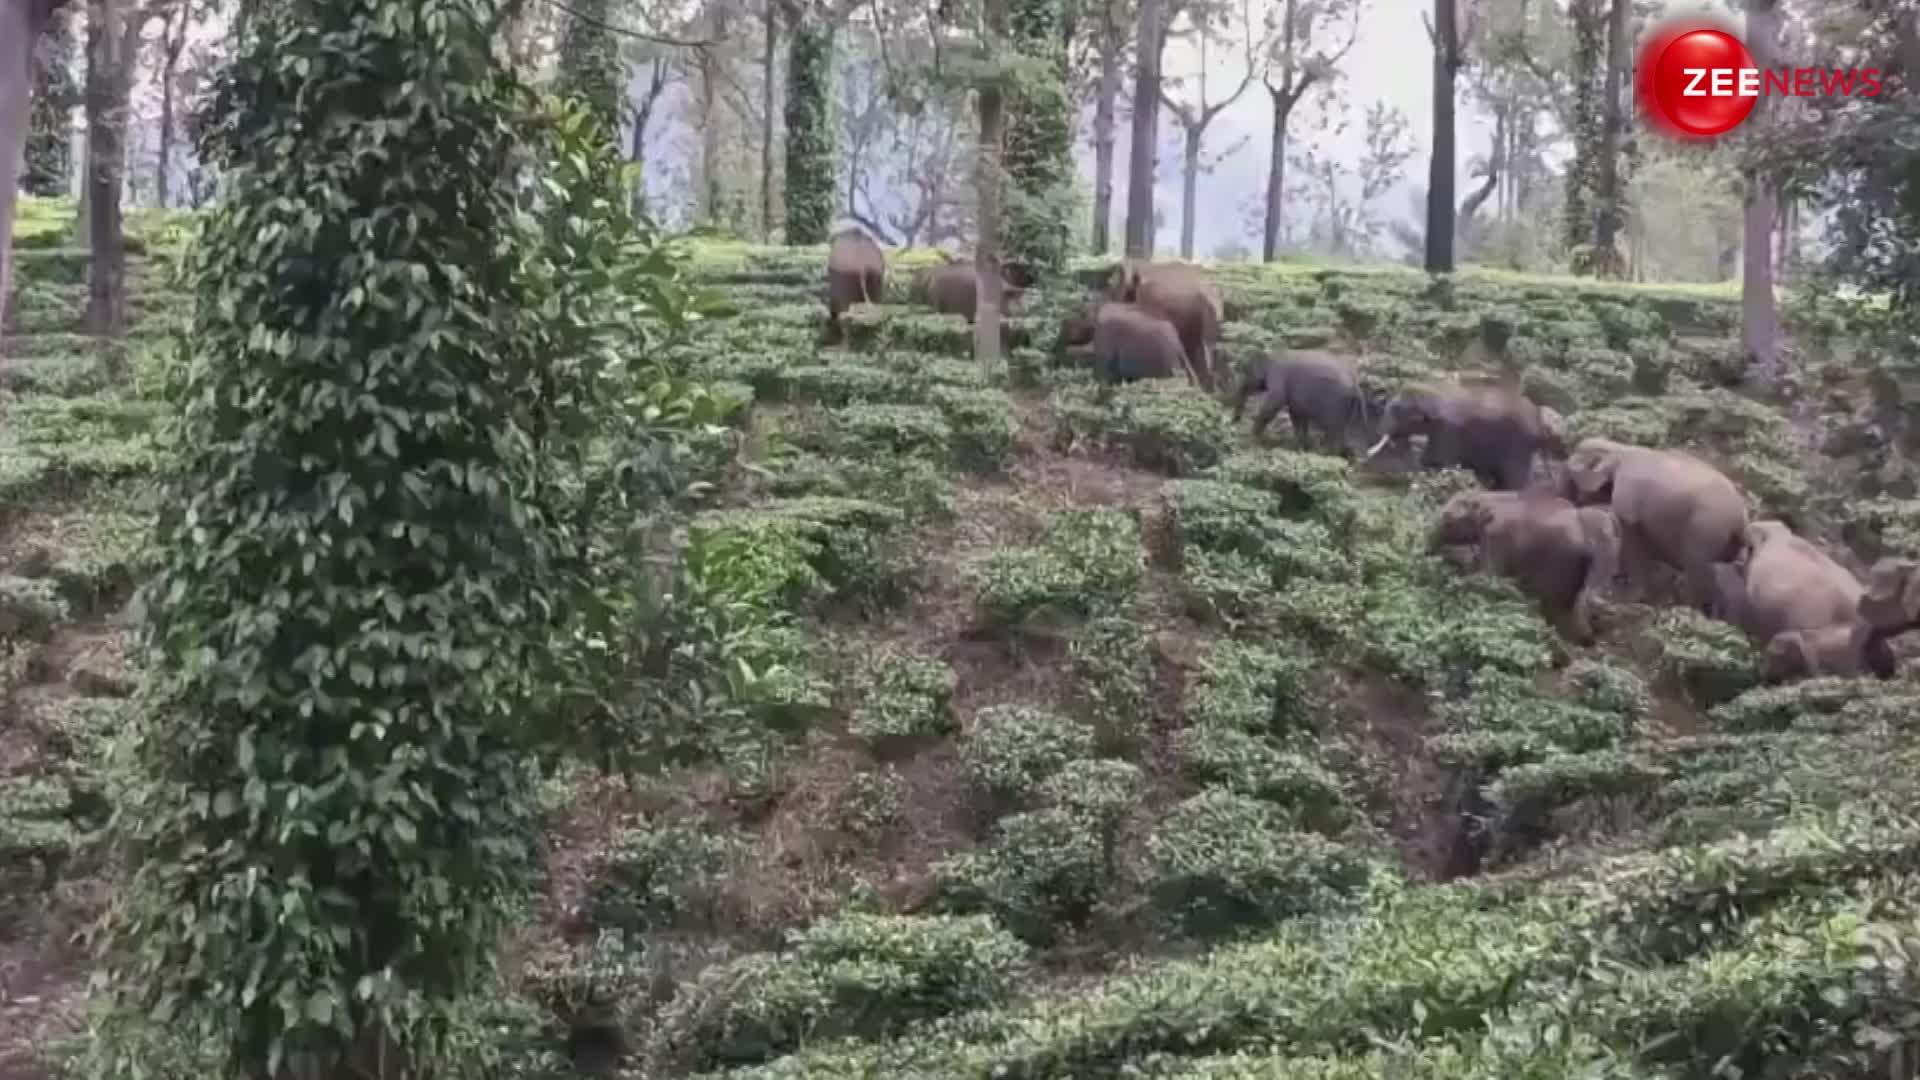 जंगल में पहली बार एक साथ दिखा हाथी का पूरा परिवार, लोगों को काफी पसंद आ रहा है वीडियो